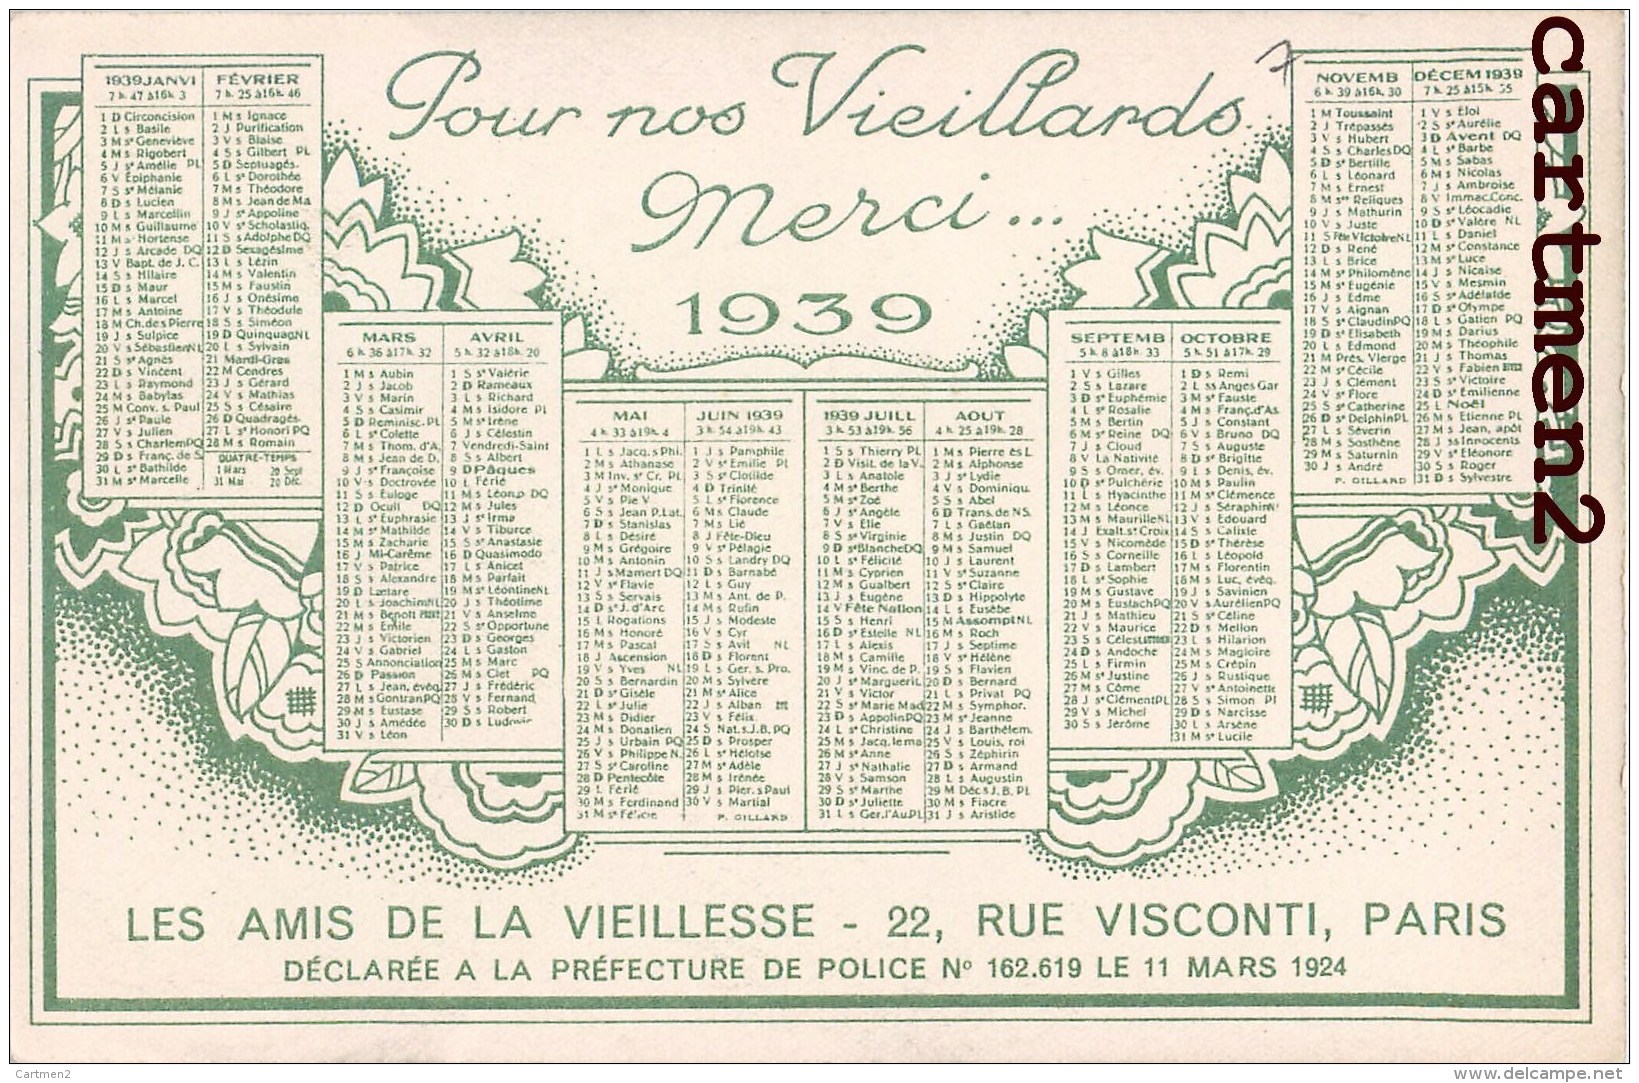 CALENDRIER ANNEE 1939 LES AMIS DE LA VIEILLESSE 22 RUE VISCONTI PARIS ASSOCIATION CARITATIVE ILLUSTRATEUR - Gewerkschaften